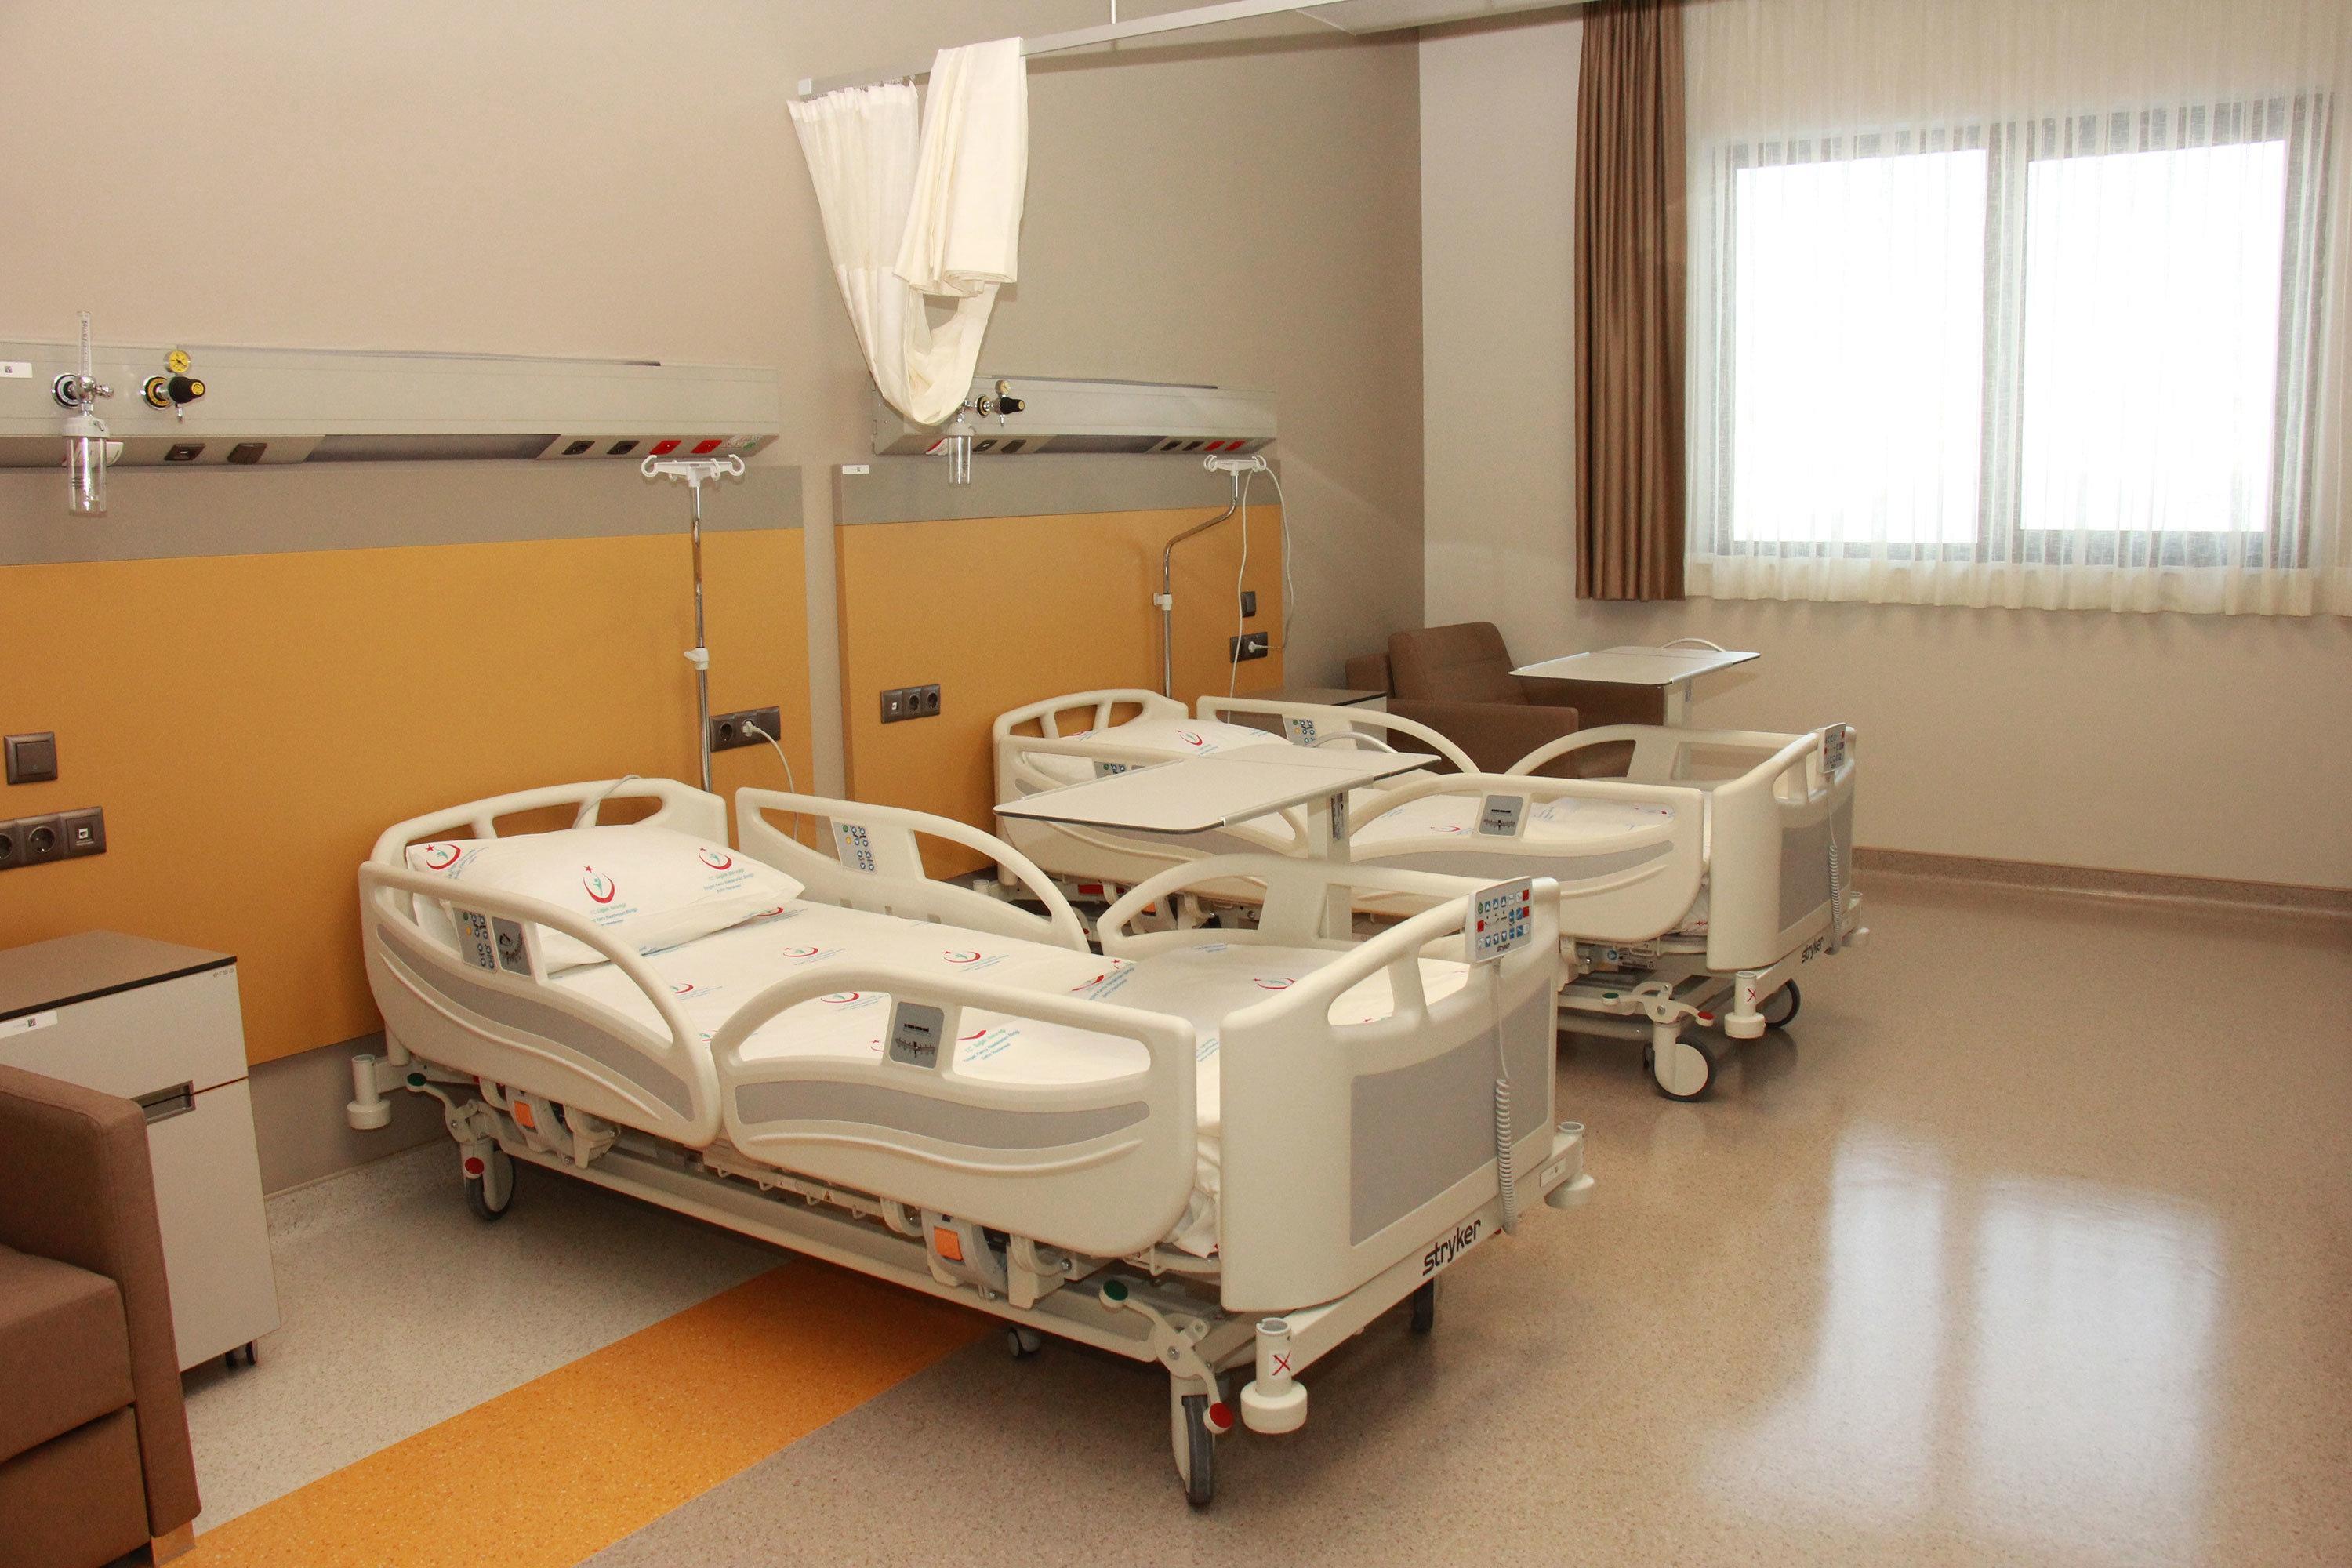 Yozgat Şehir Hastanesi hasta kabulüne başlıyor